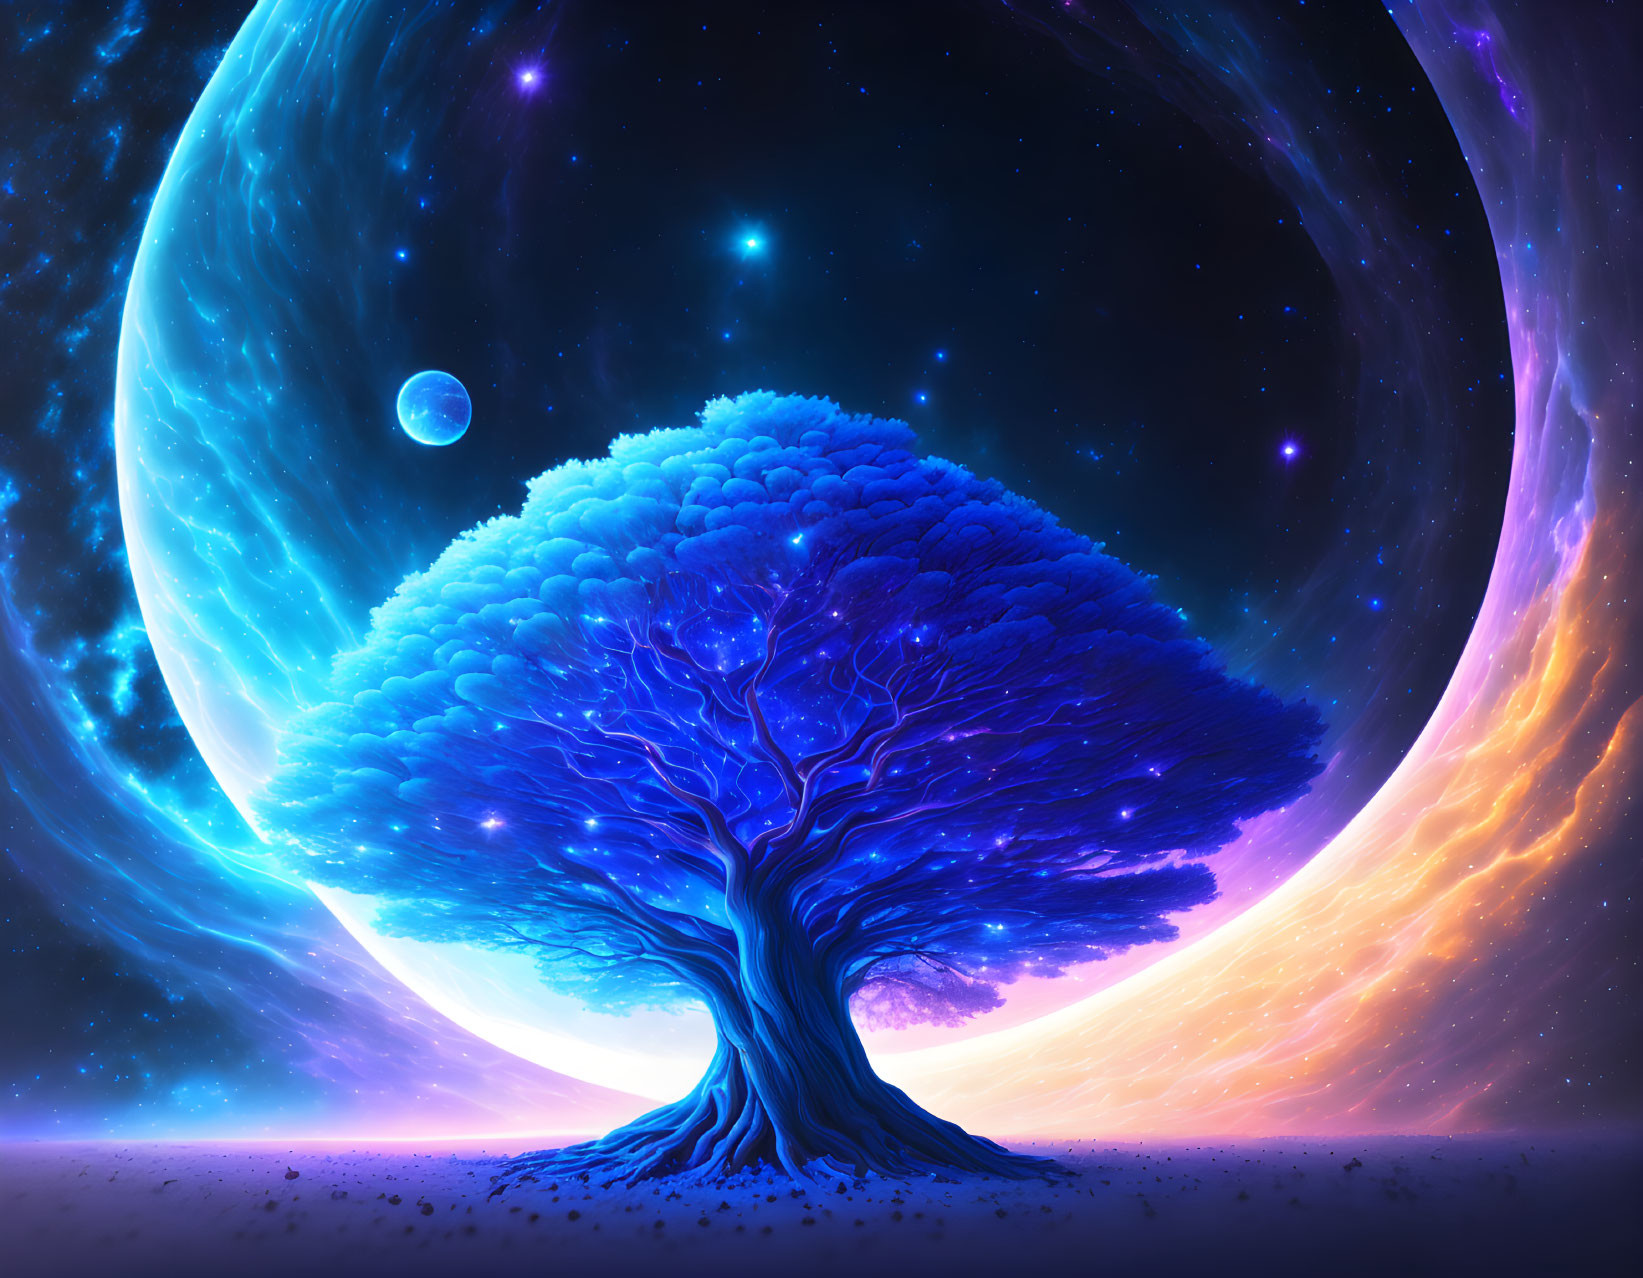 Colorful digital artwork: Solitary tree in cosmic setting